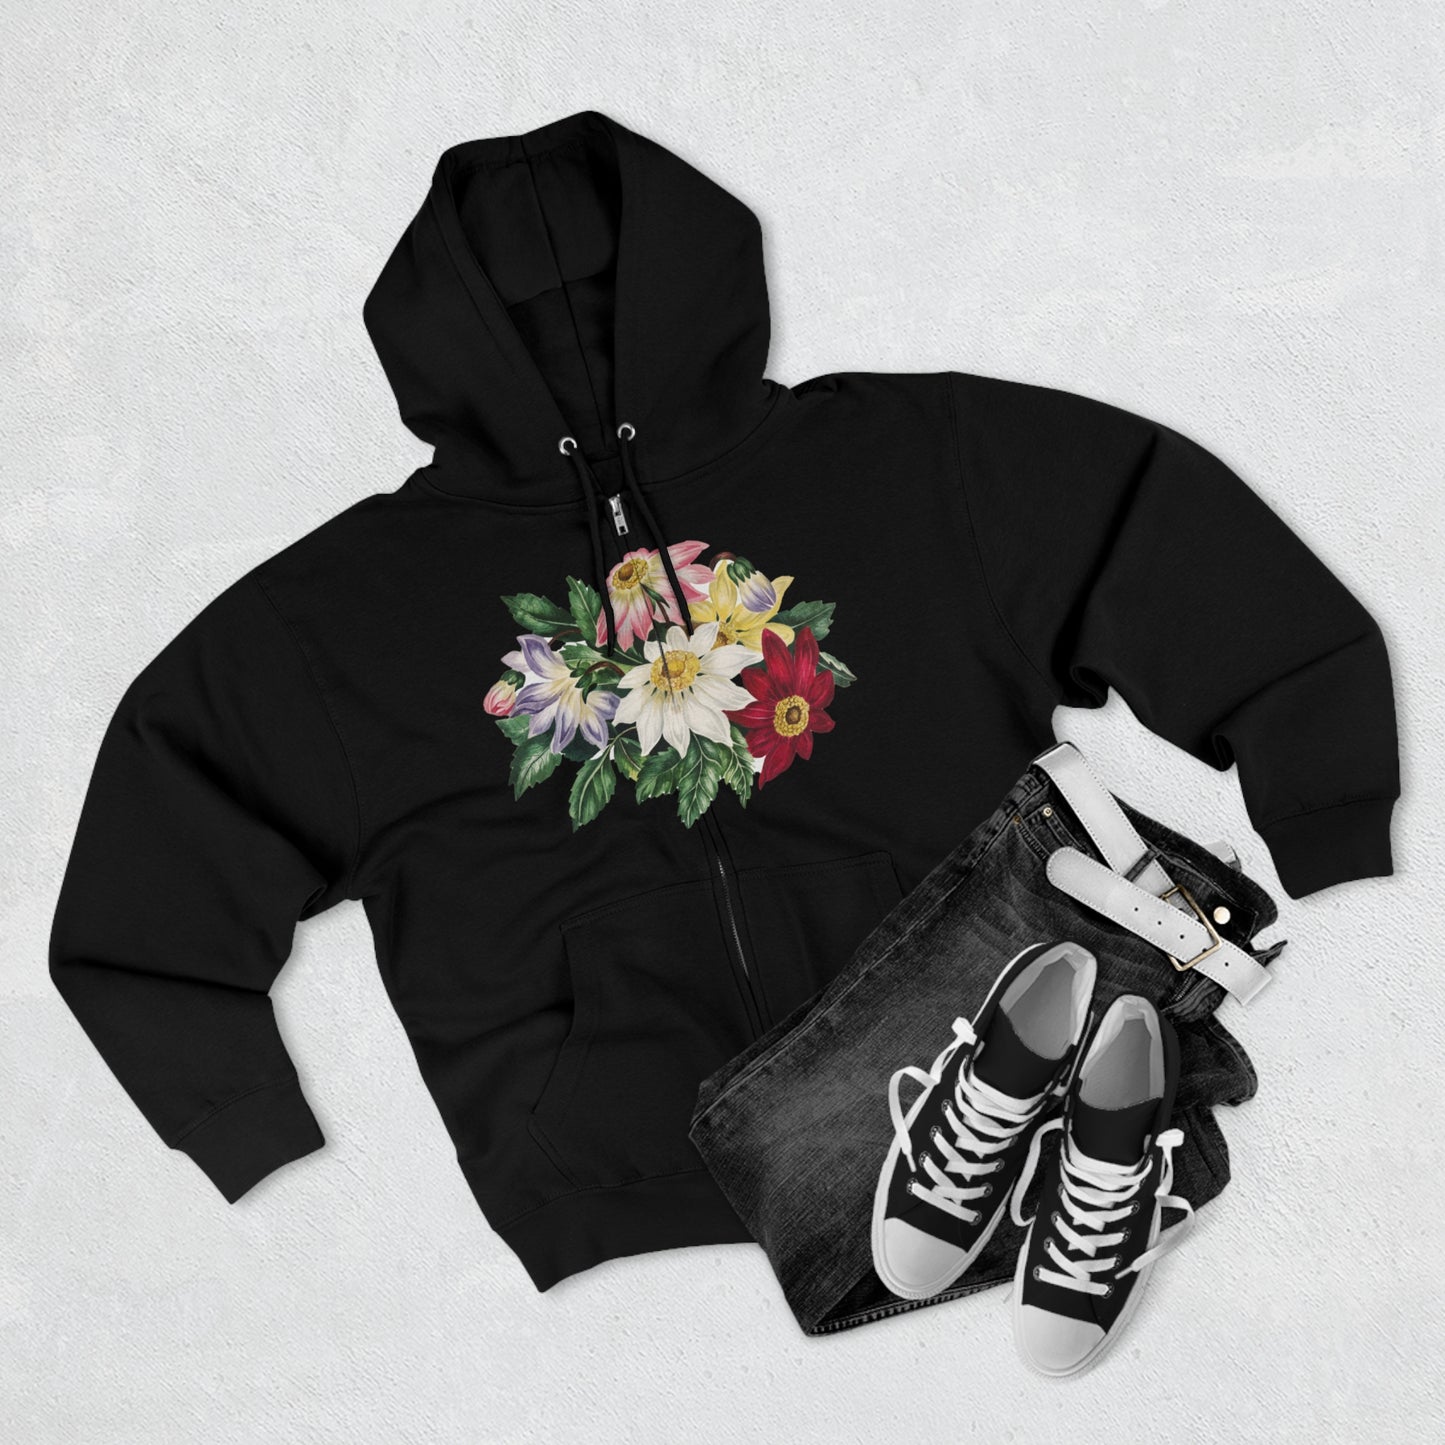 Flowers Full Zip-up Hoodie, Beautiful, Colorful Flower Hooded Sweatshirt, Museum Art Print